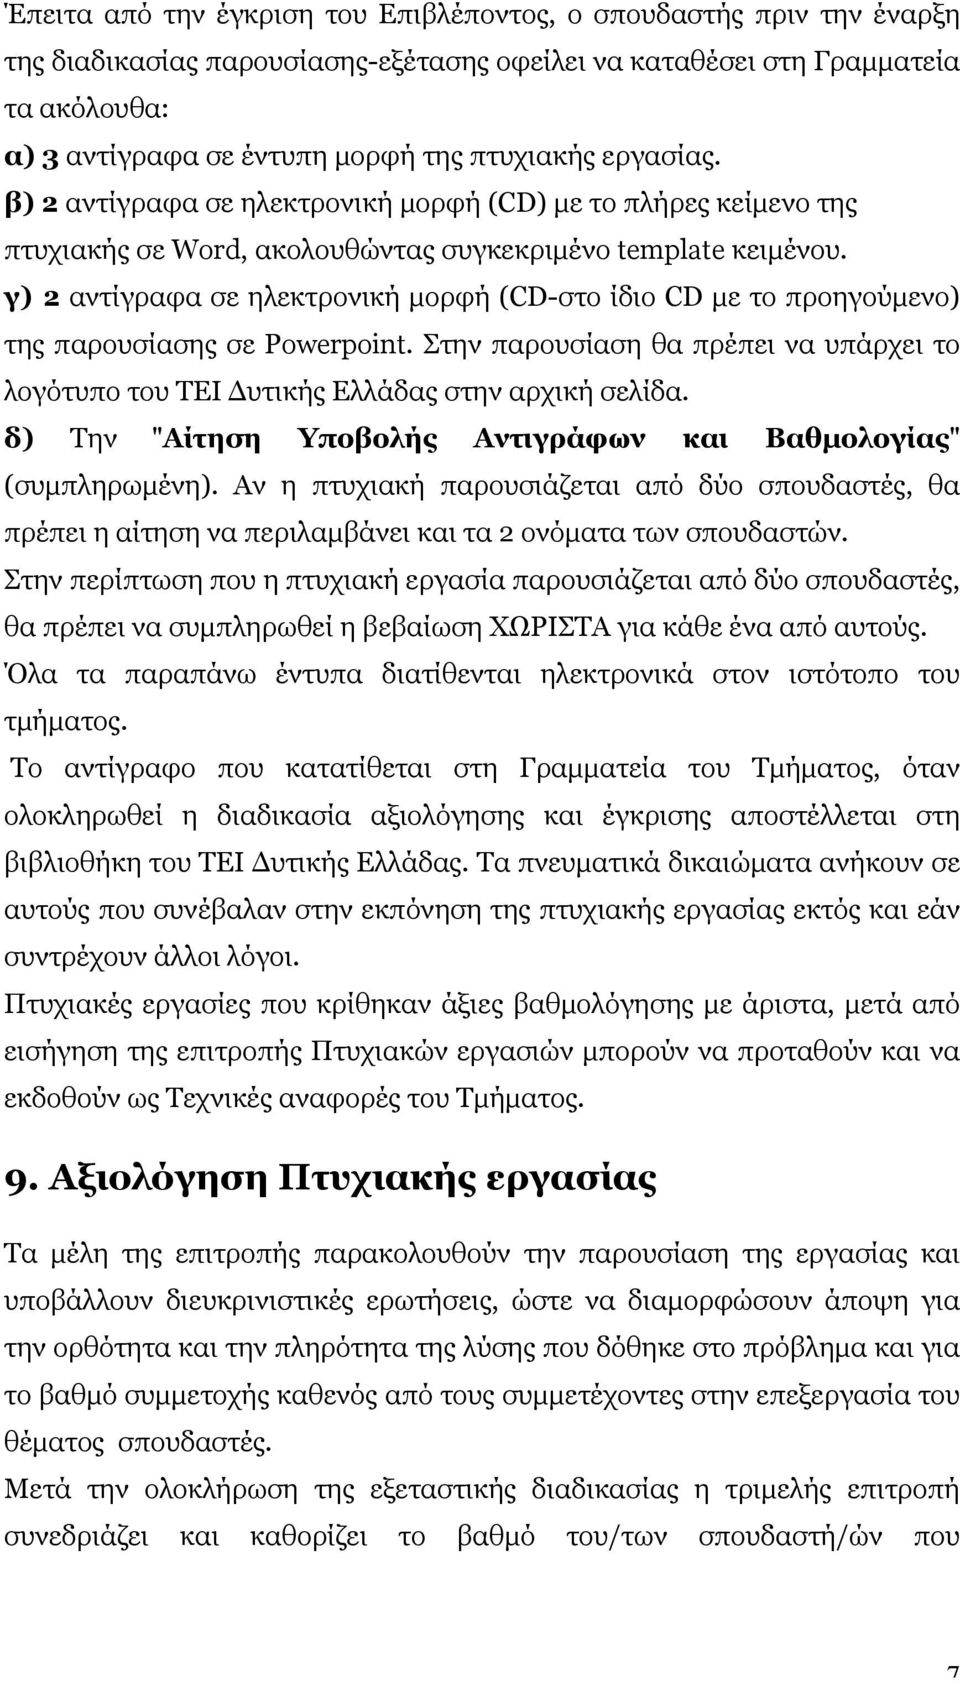 γ) 2 αντίγραφα σε ηλεκτρονική µορφή (CD-στο ίδιο CD µε το προηγούµενο) της παρουσίασης σε Powerpoint. Στην παρουσίαση θα πρέπει να υπάρχει το λογότυπο του ΤΕΙ Δυτικής Ελλάδας στην αρχική σελίδα.